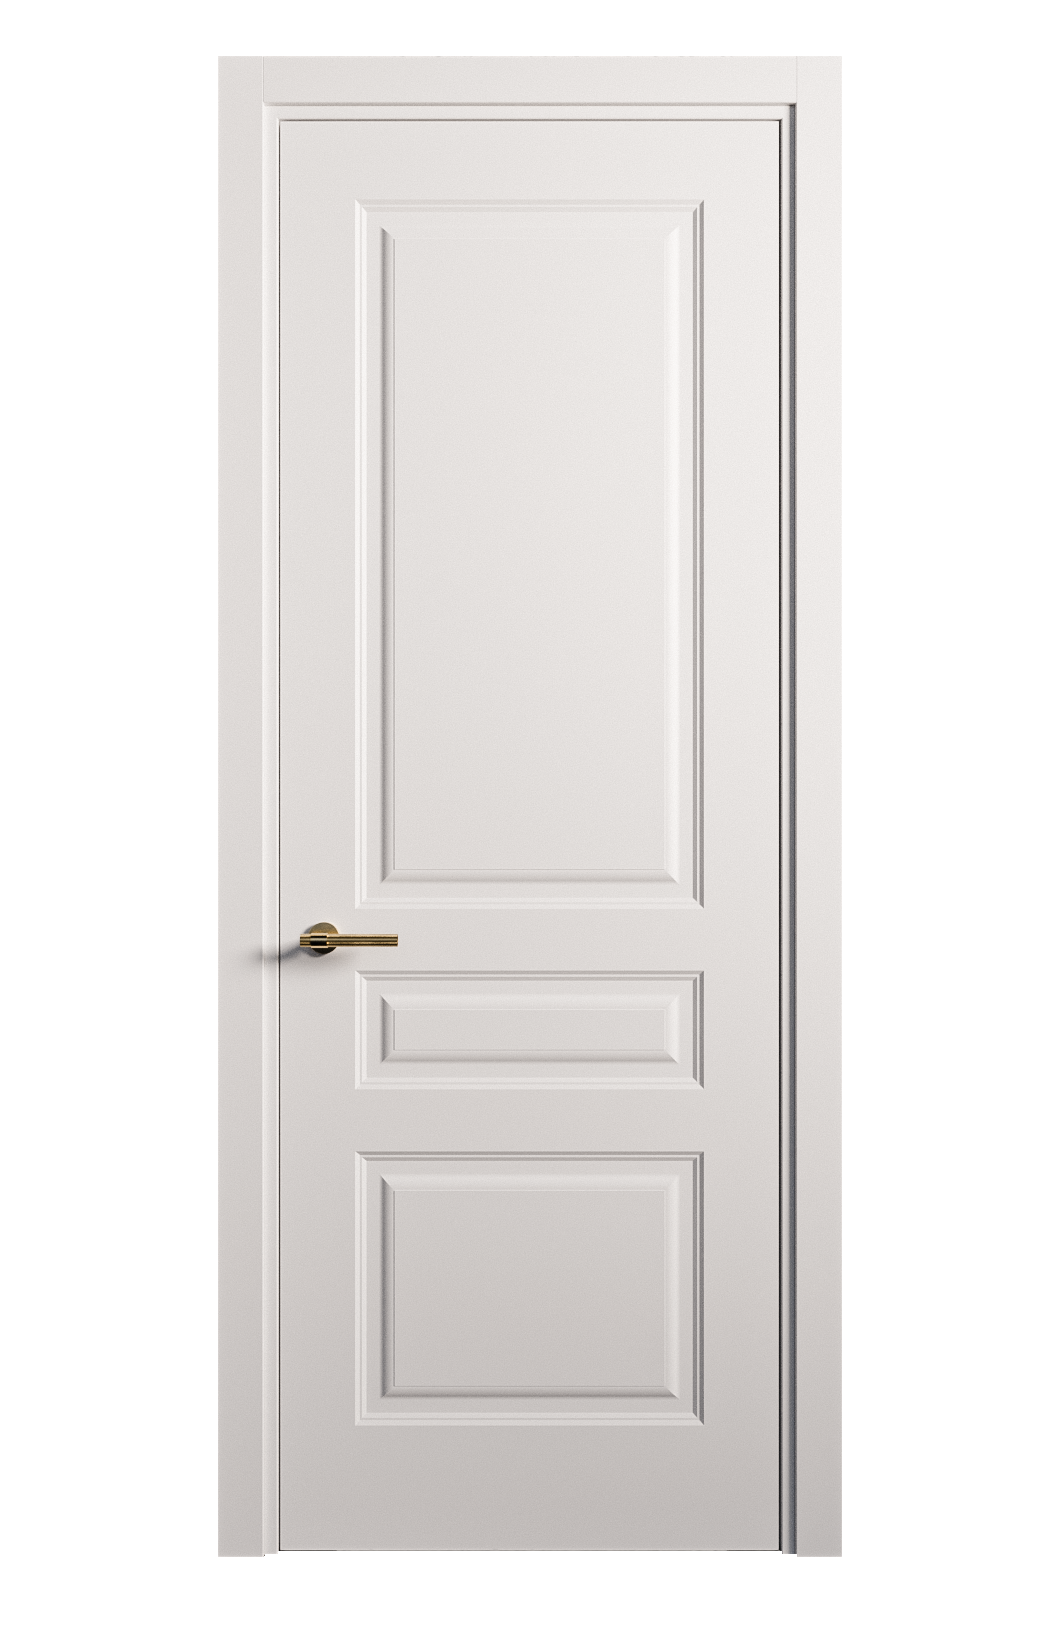 Межкомнатная дверь Вита-2 глухая эмаль ral 9003 26382